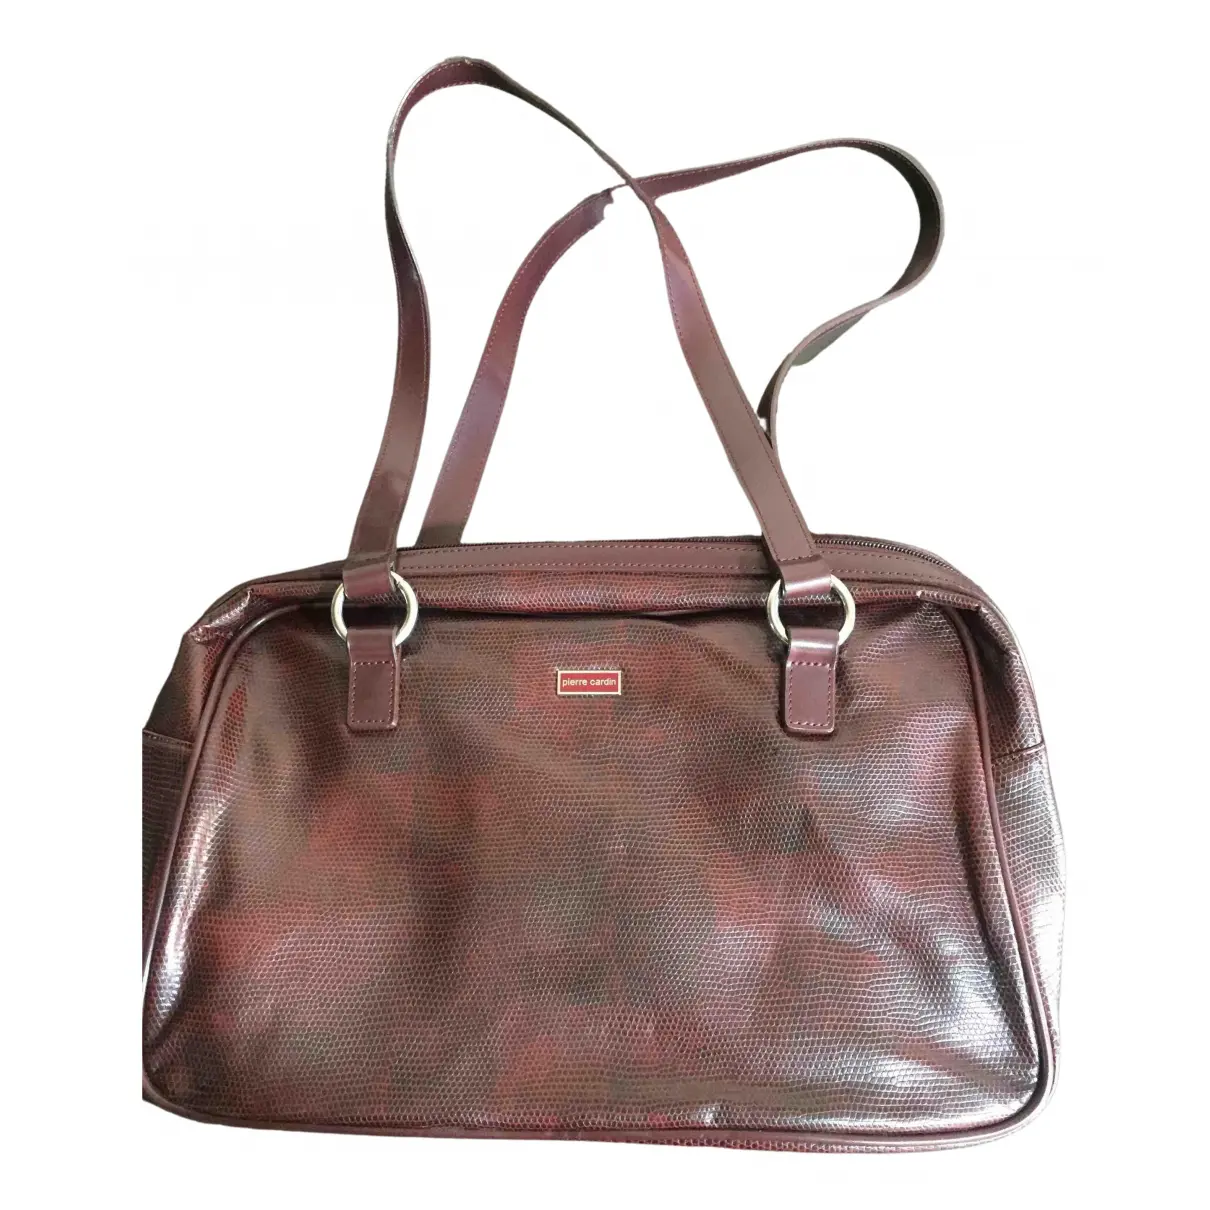 Vegan leather handbag Pierre Cardin